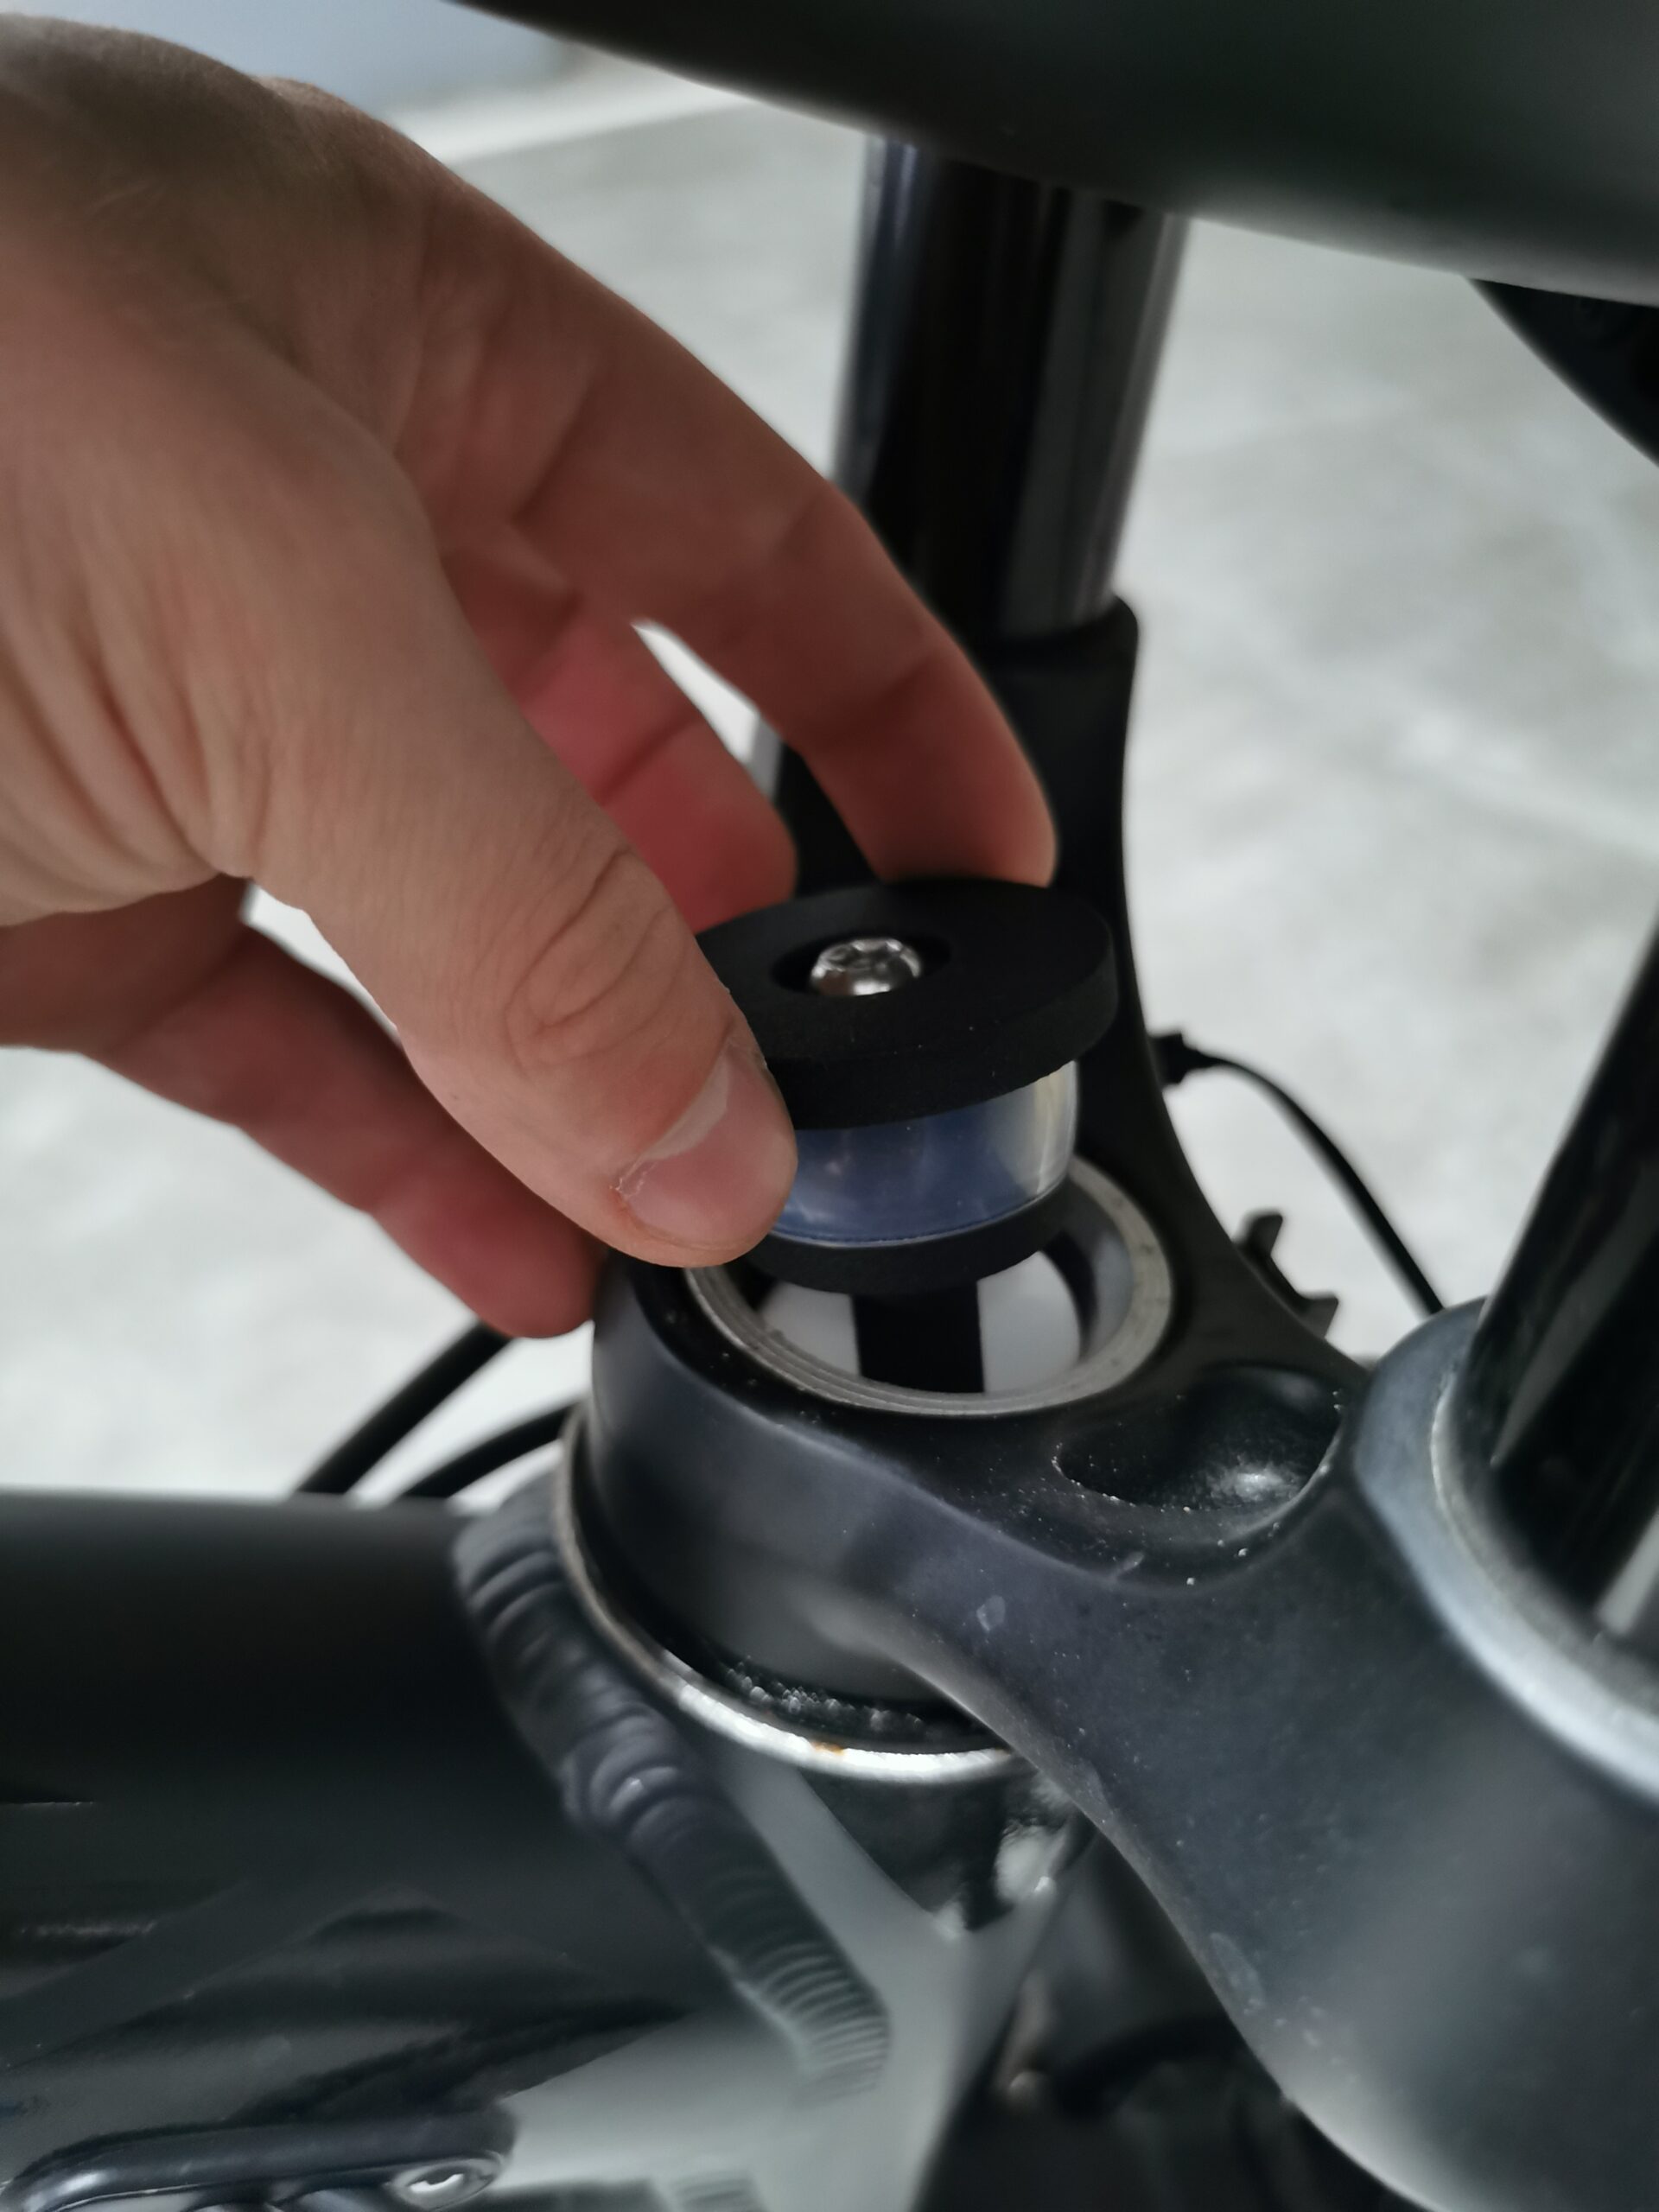 Kit supporto per tracker MTB Air Tag e adesivo per piastrelle compatibile  con forcella antifurto per mountain bike -  Italia